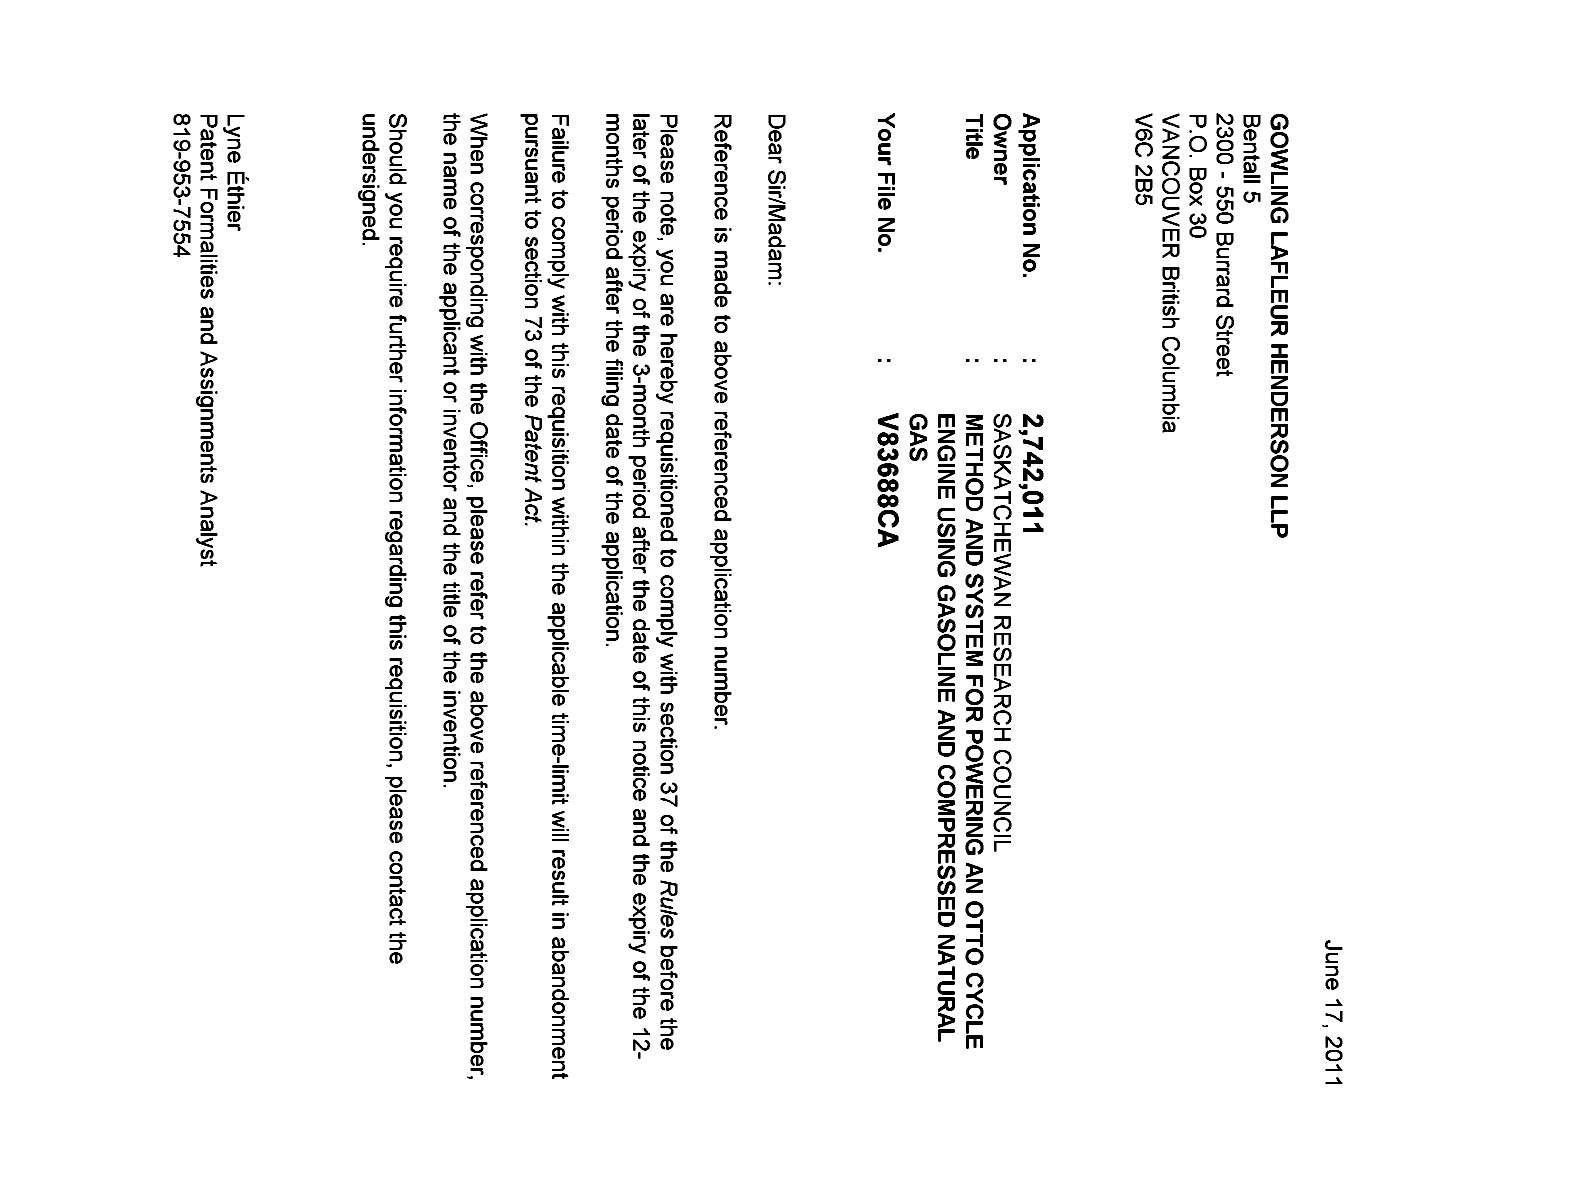 Document de brevet canadien 2742011. Correspondance 20101217. Image 1 de 1